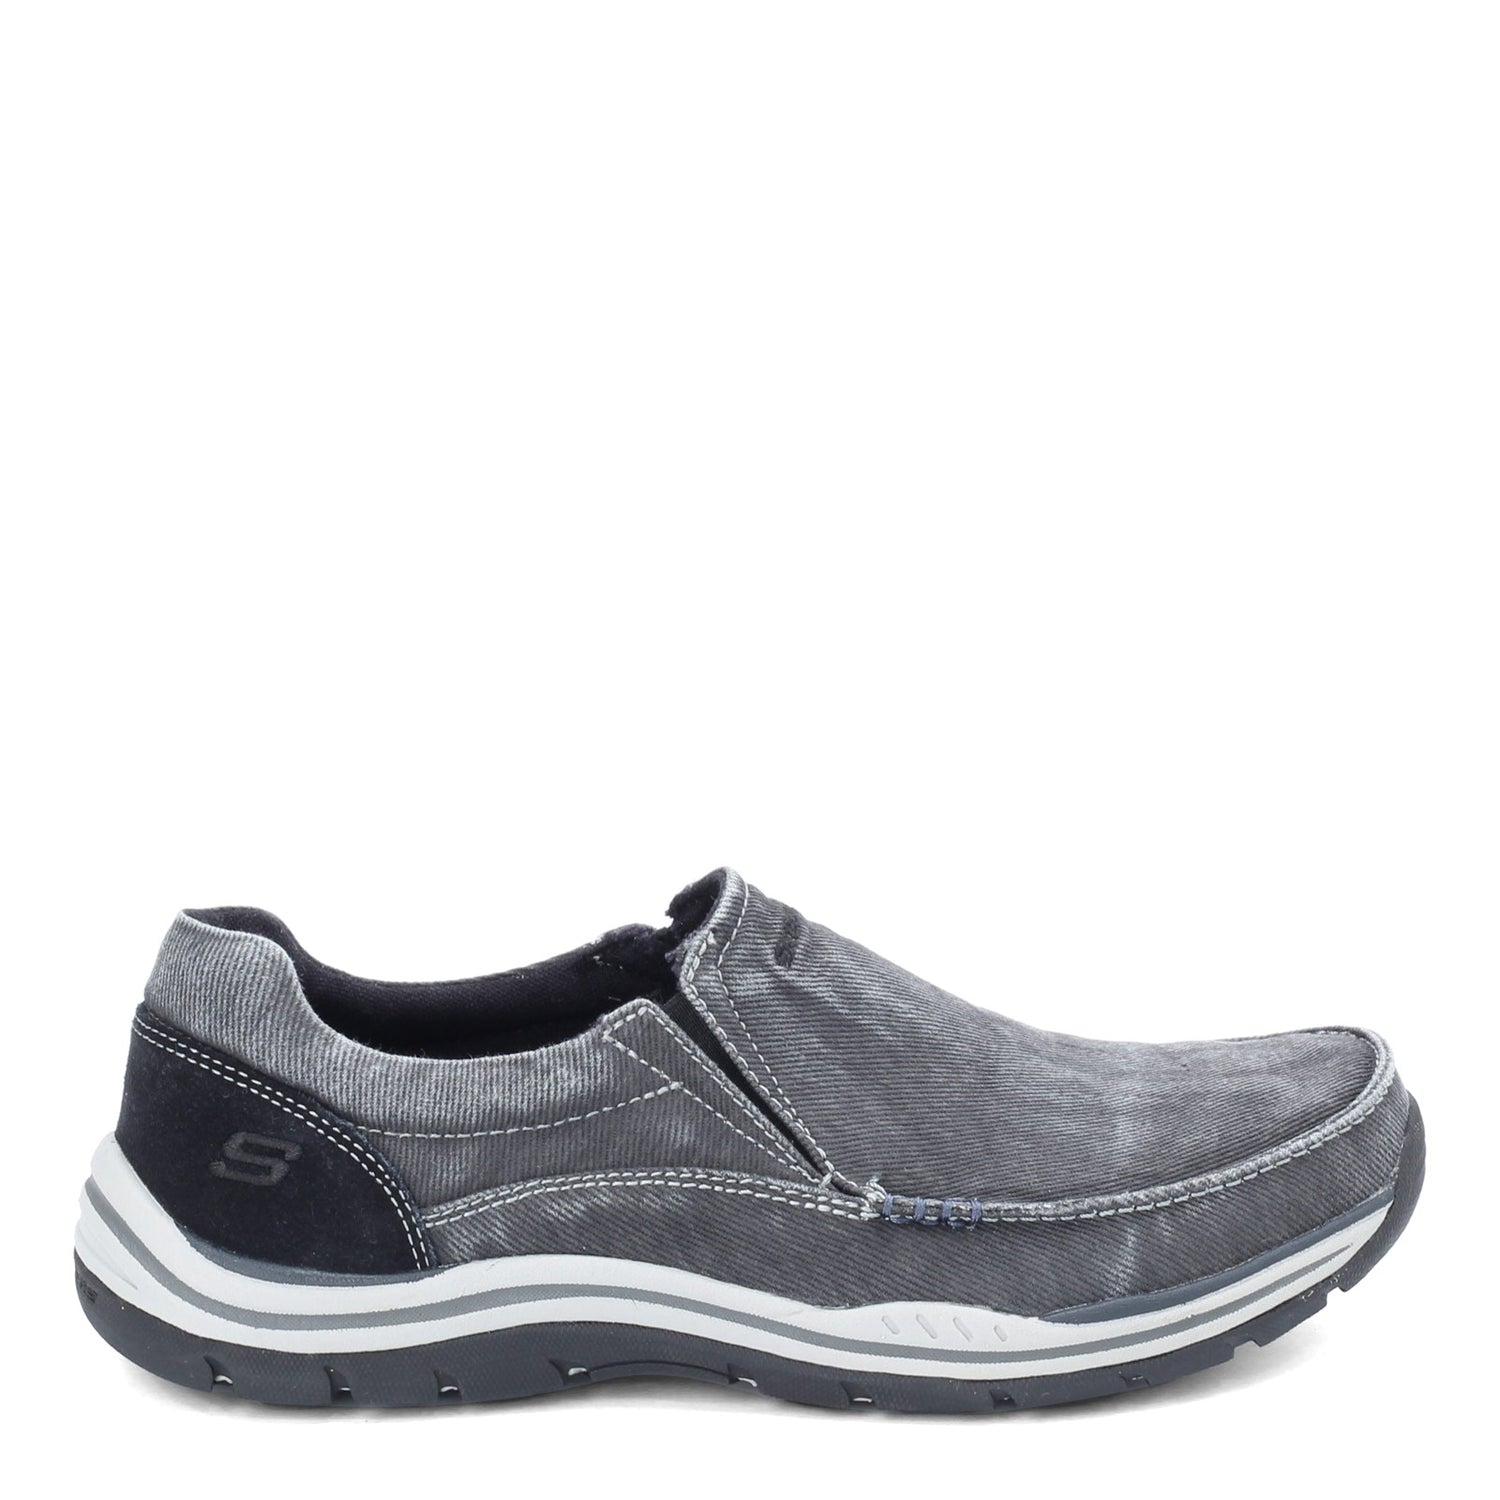 Peltz Shoes  Men's Skechers Expected Avillo Slip on Shoe BLACK 64109 BLK